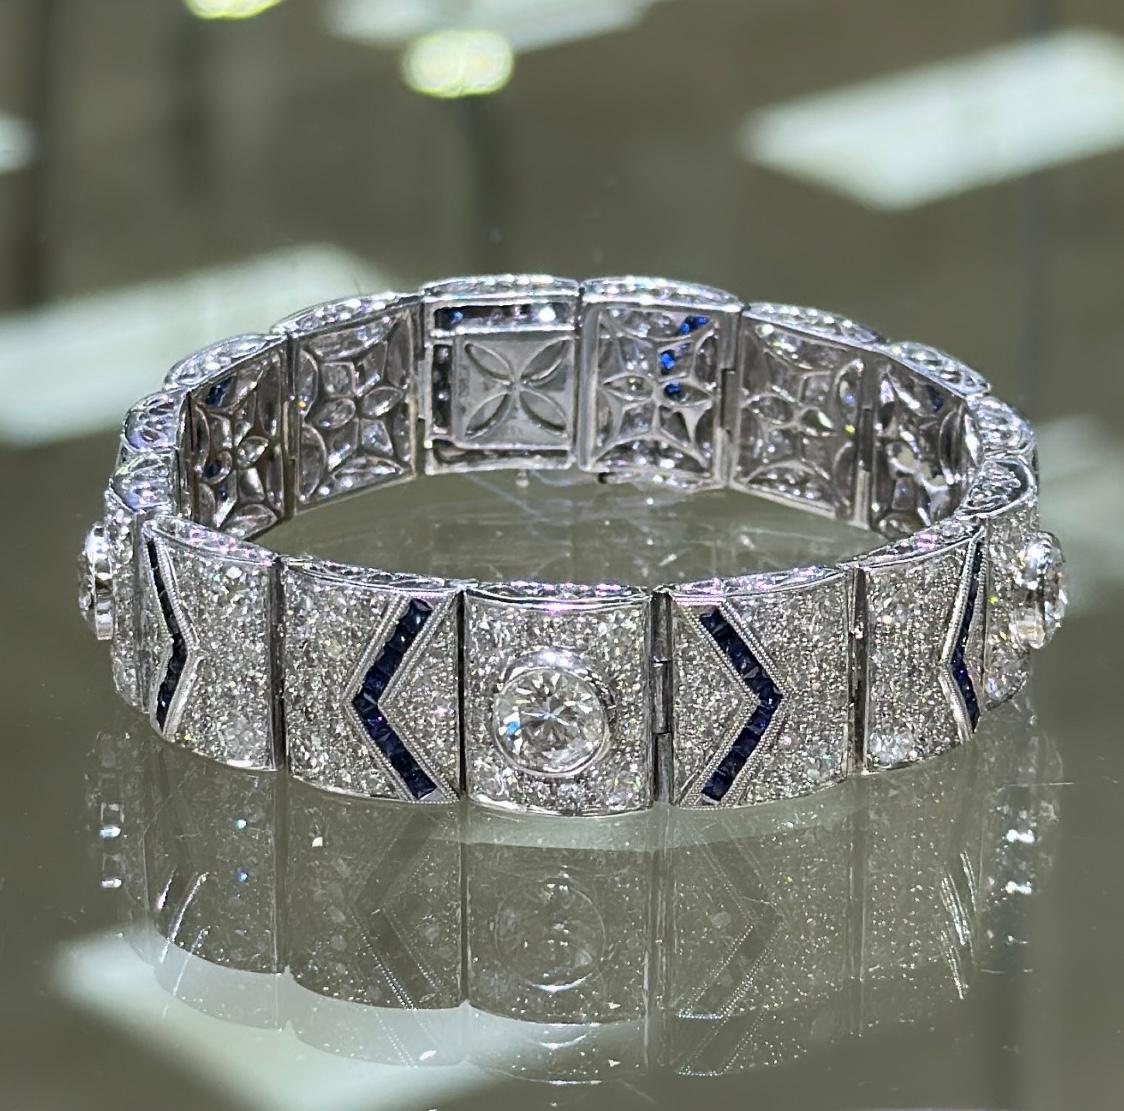 Dieses Armband ist für eine Königin gemacht. 
Absolut atemberaubendes weißes und blaues Saphir-Diamant-Schmuckdesign, das wunderschön funkelt. Es besteht aus Platin.
Metall: Platin
Diamant-Gewicht 308: 12,80ctw
Saphir Gewicht 90: 3.37ctw
Breite des